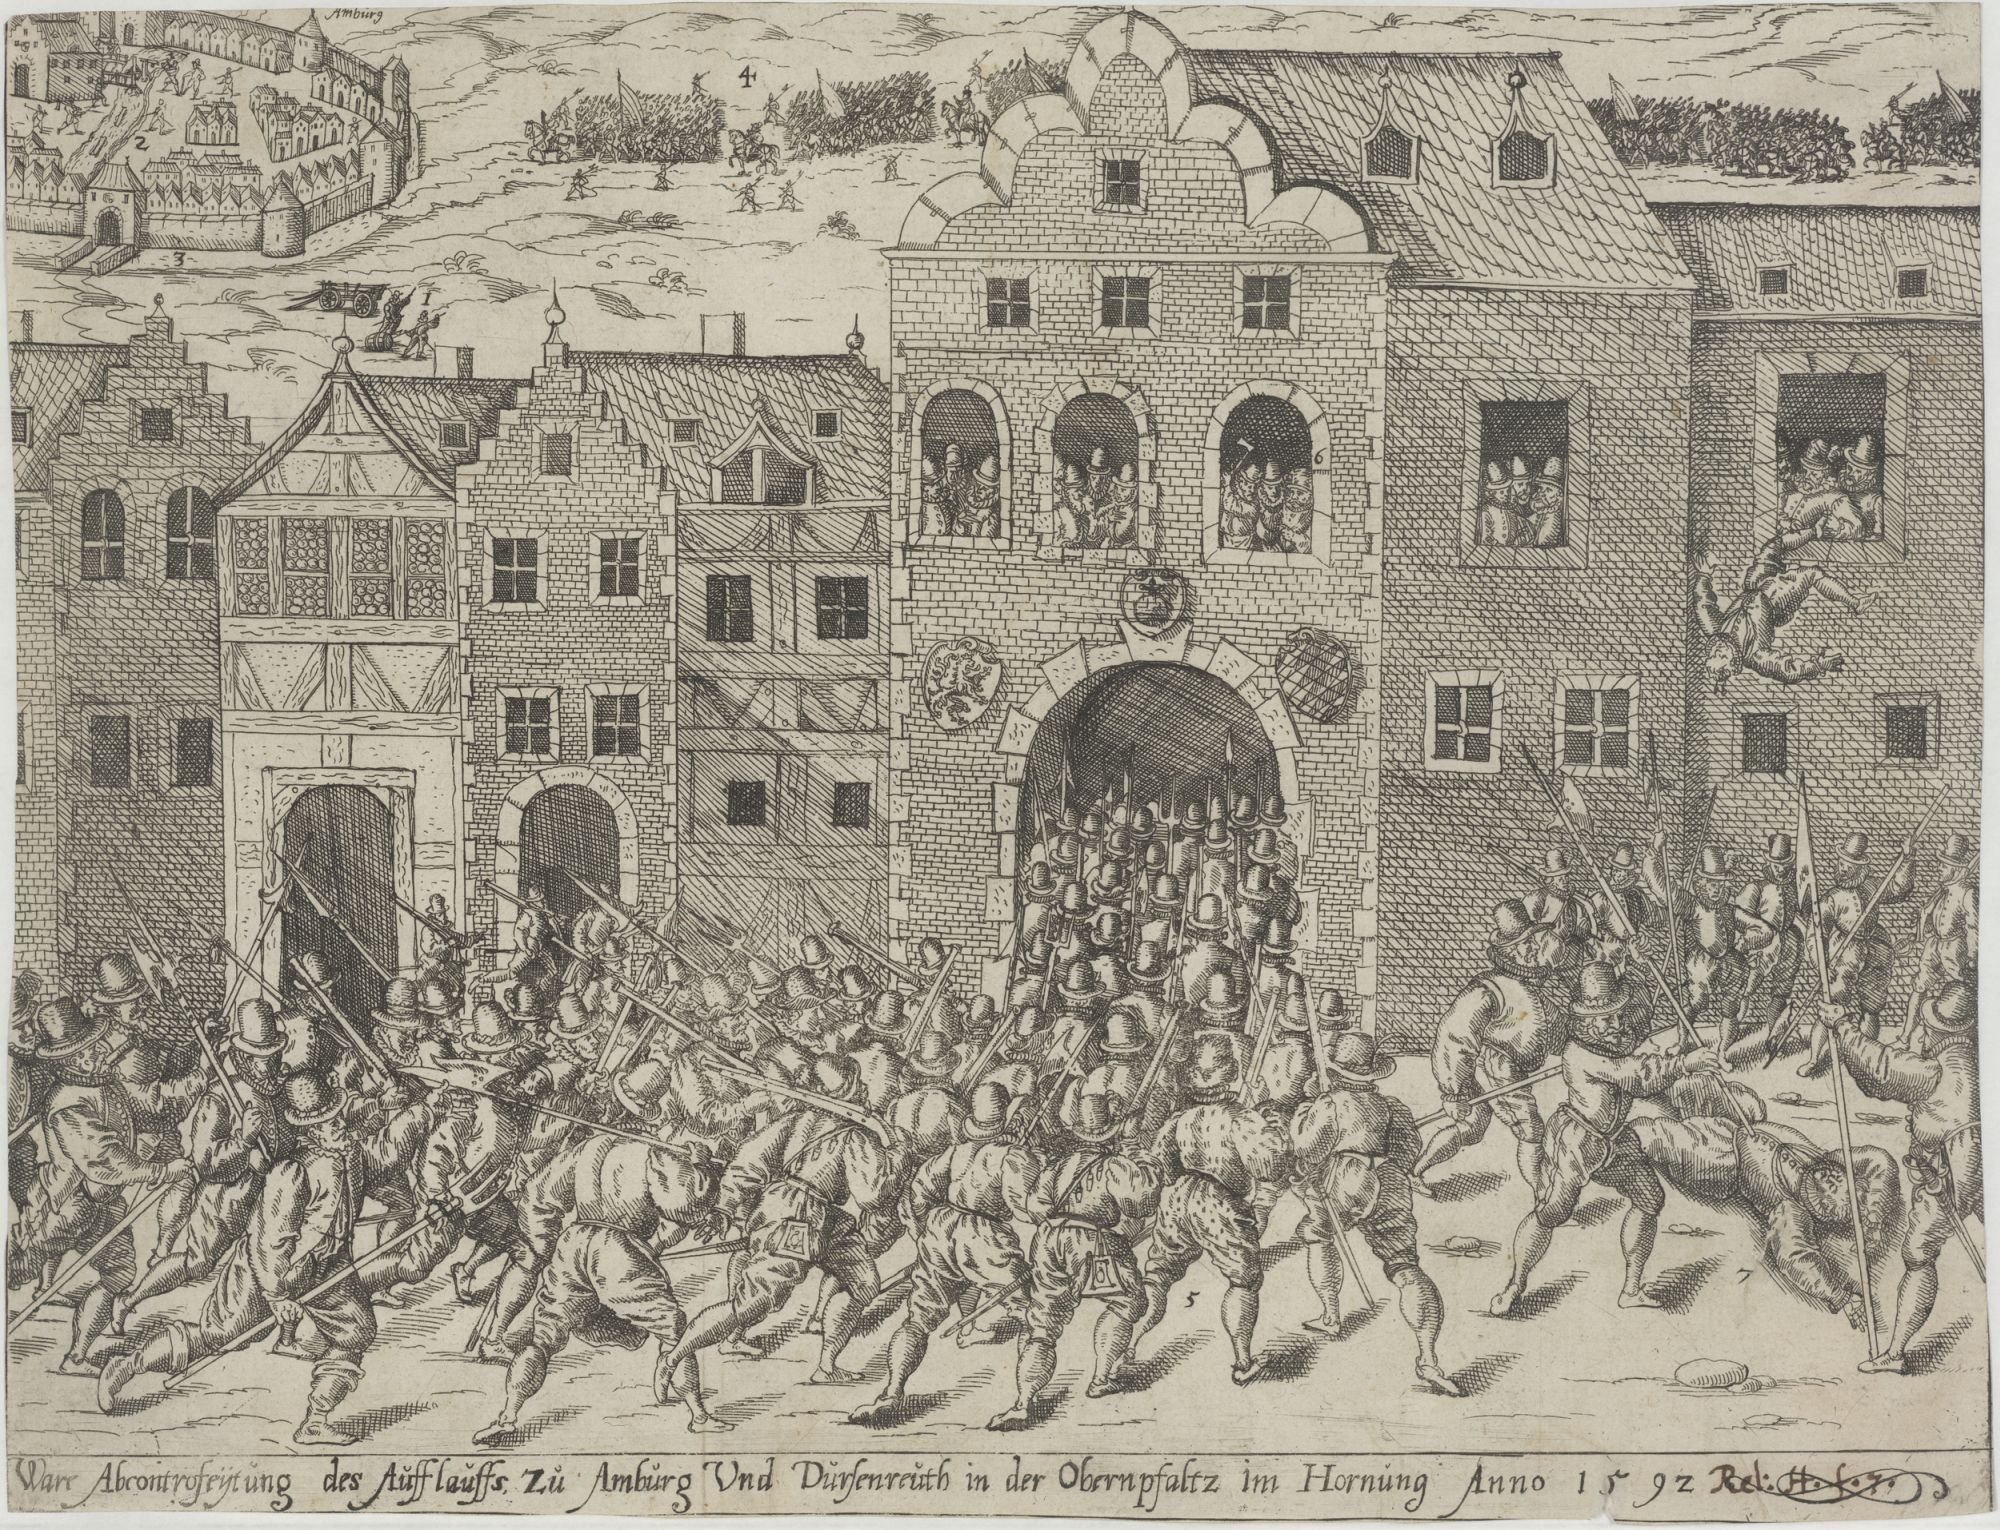 Ware Abcontrofeytung des Aufflauffs zu Amburg Und Dursenreuth in der Obernpfaltz im Hornung Anno 1592 (Kulturstiftung Sachsen-Anhalt Public Domain Mark)